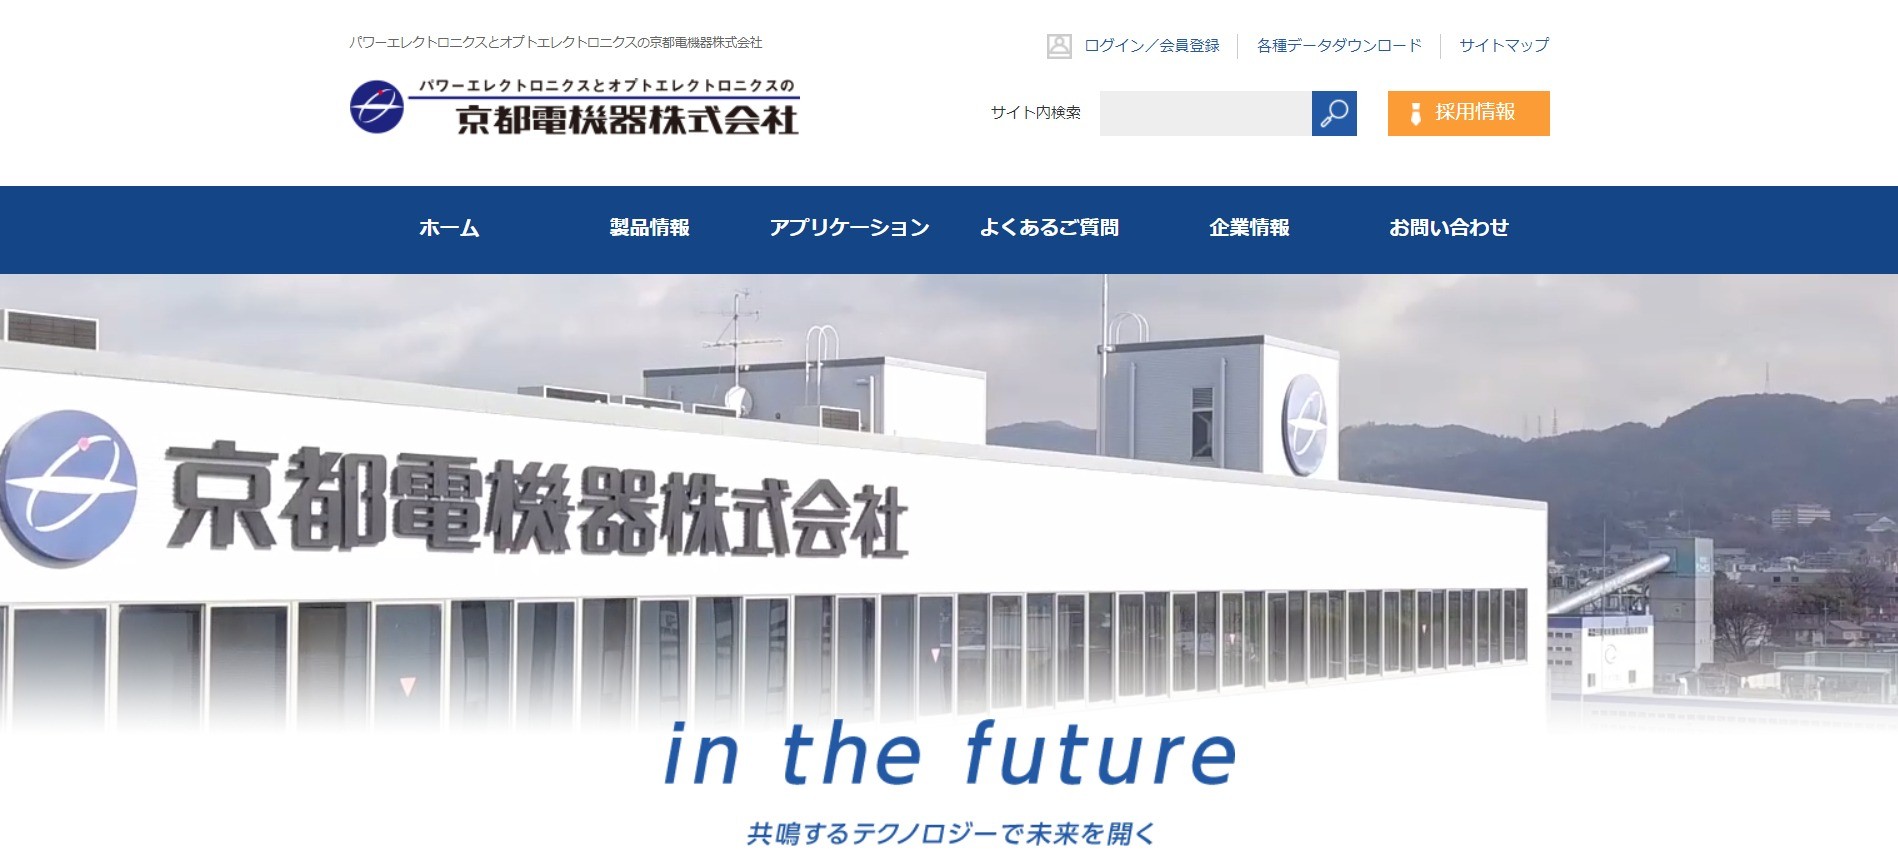 京都電機器株式会社のai開発